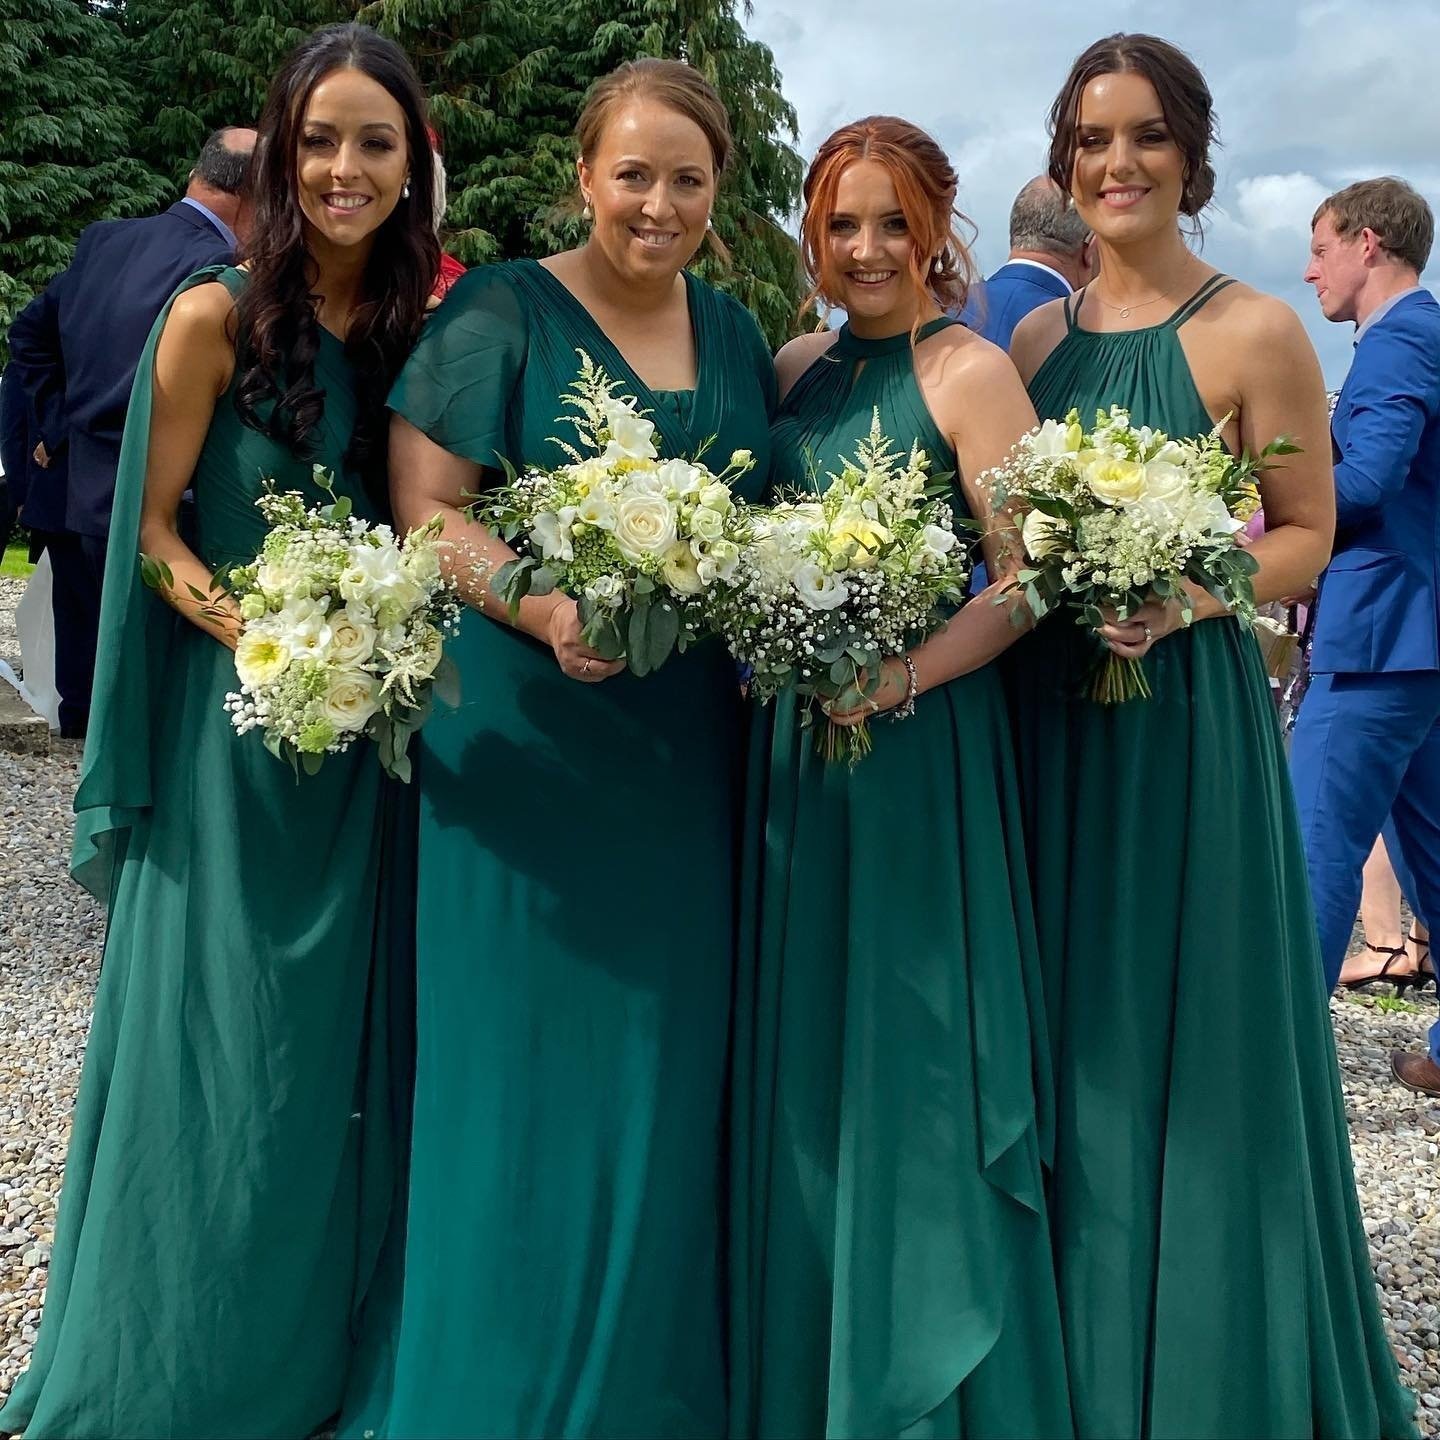 Elderwood+Wedding+Florist+with+Green+bridesmaids+and+flwoers.jpg